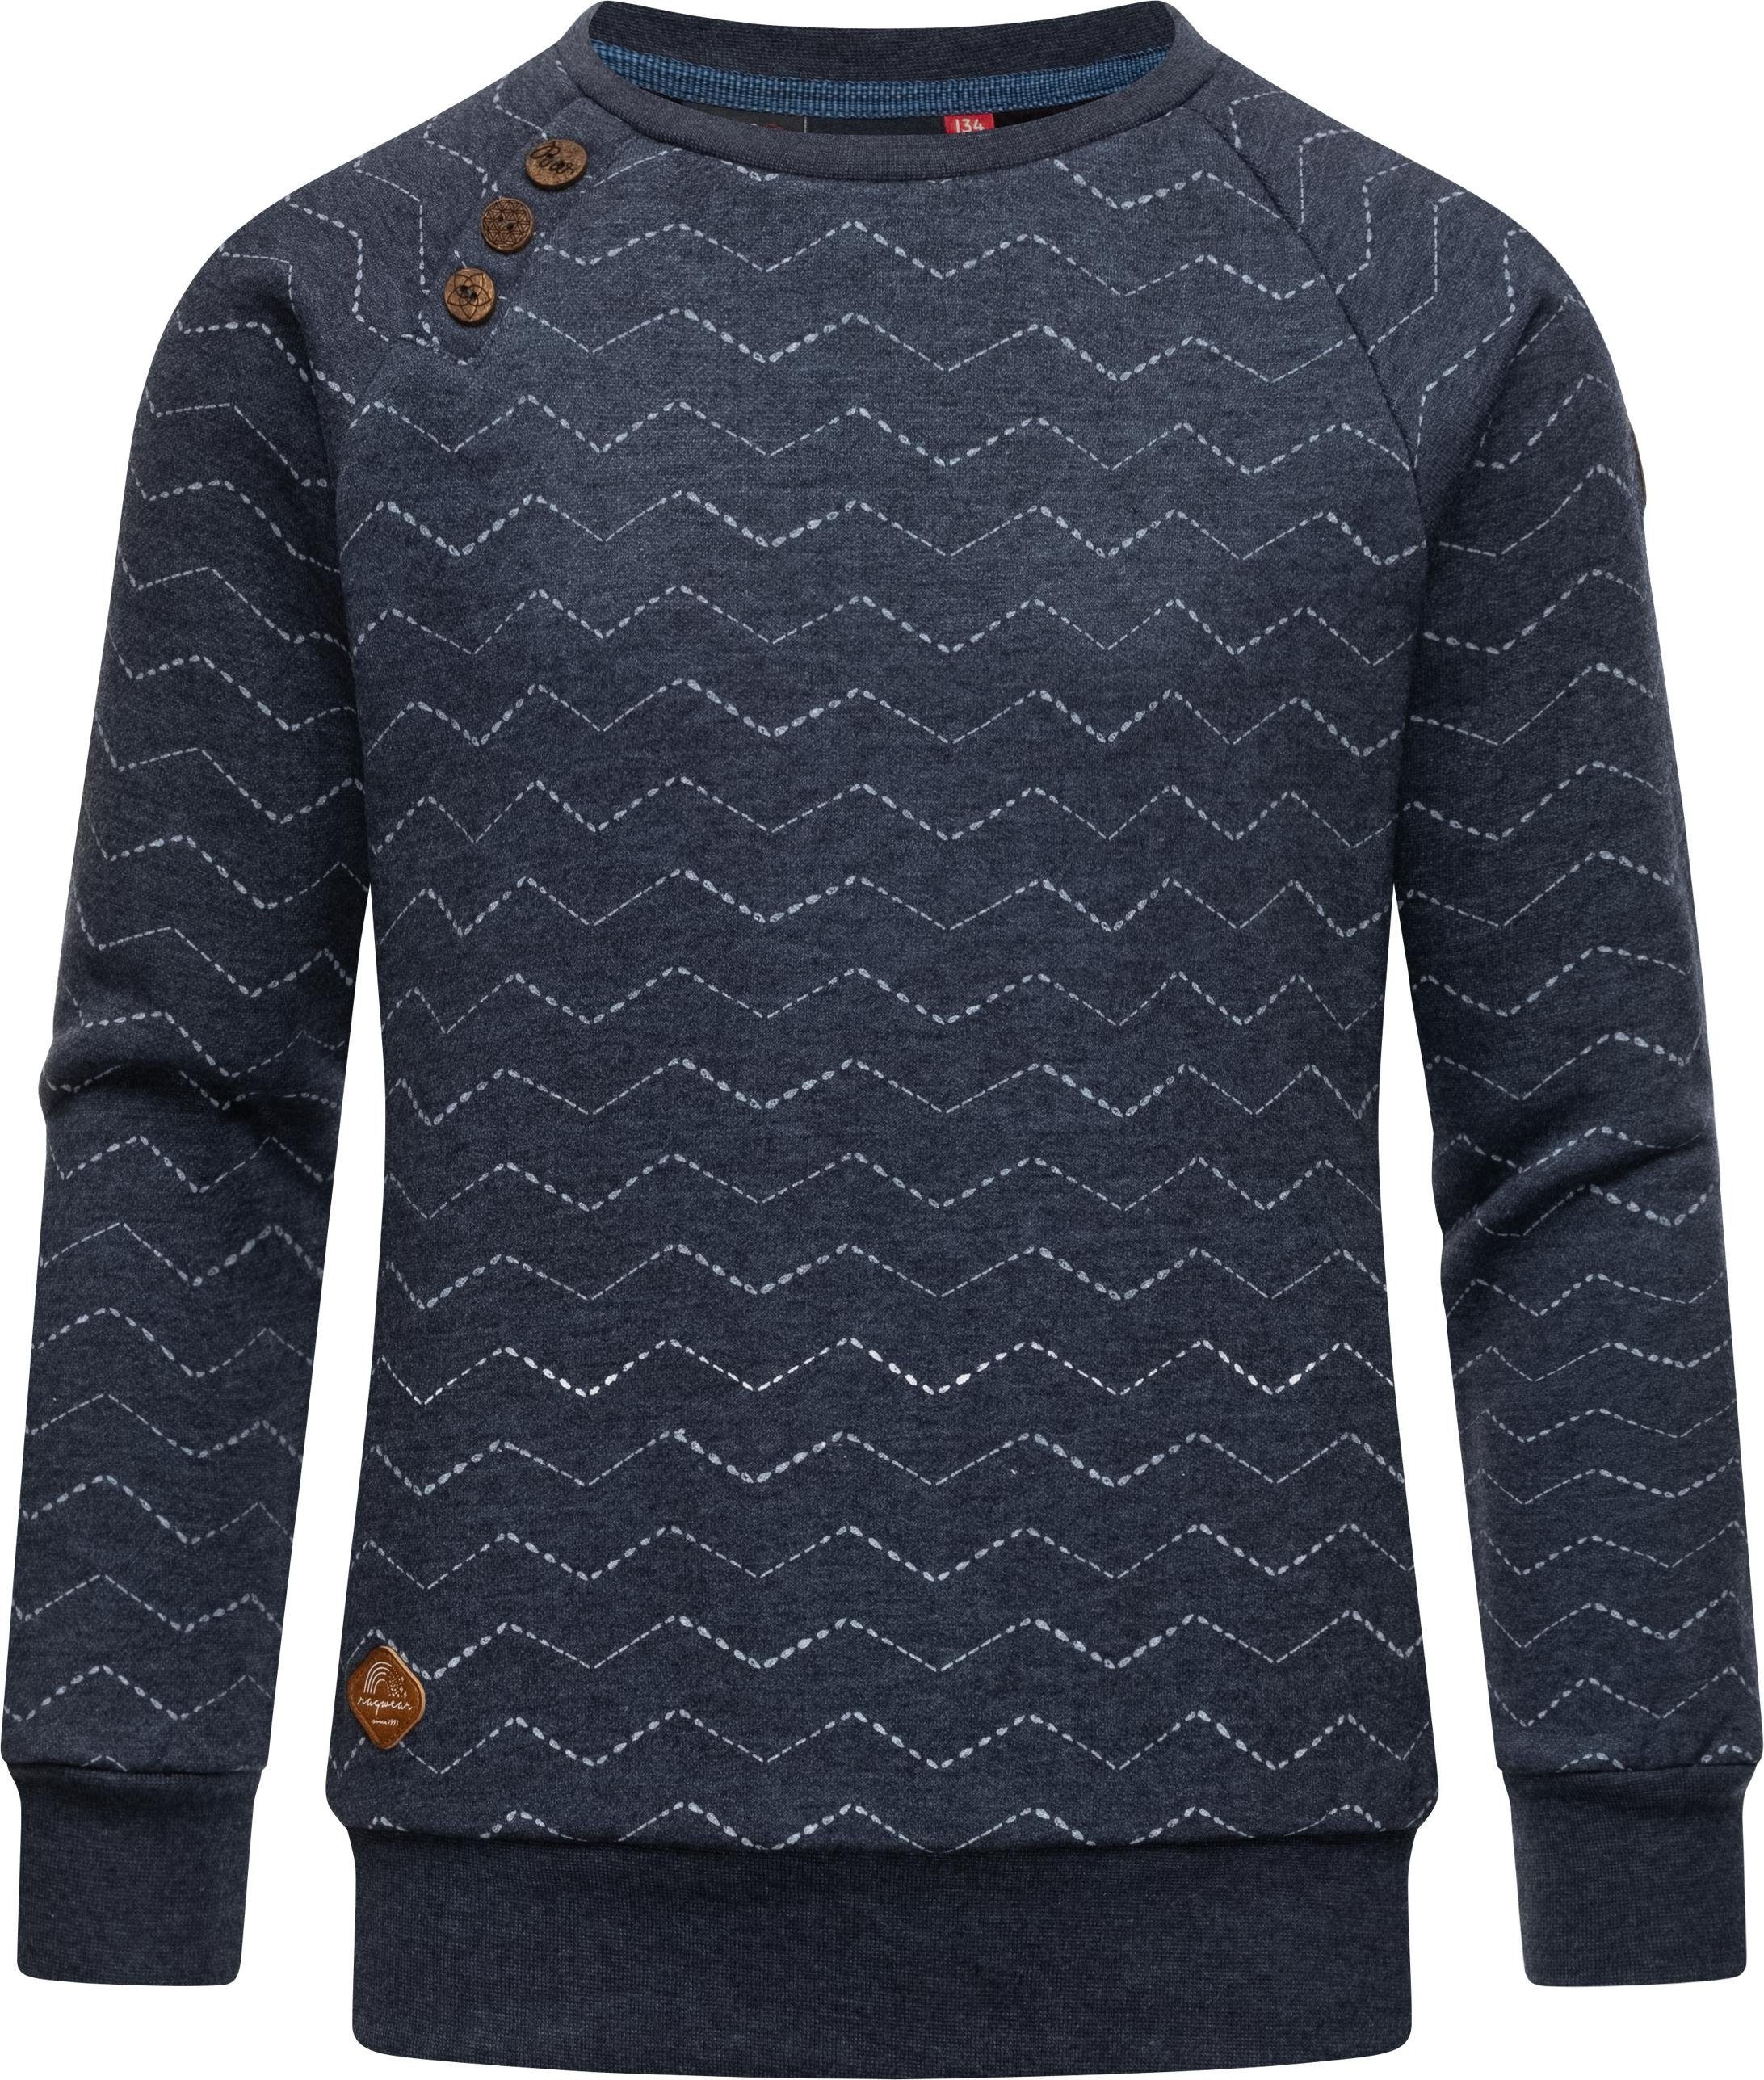 Ragwear Sweater Darinka Zig Zag stylisches Mädchen Sweatshirt mit Zick-Zack-Muster navy | Sweatshirts